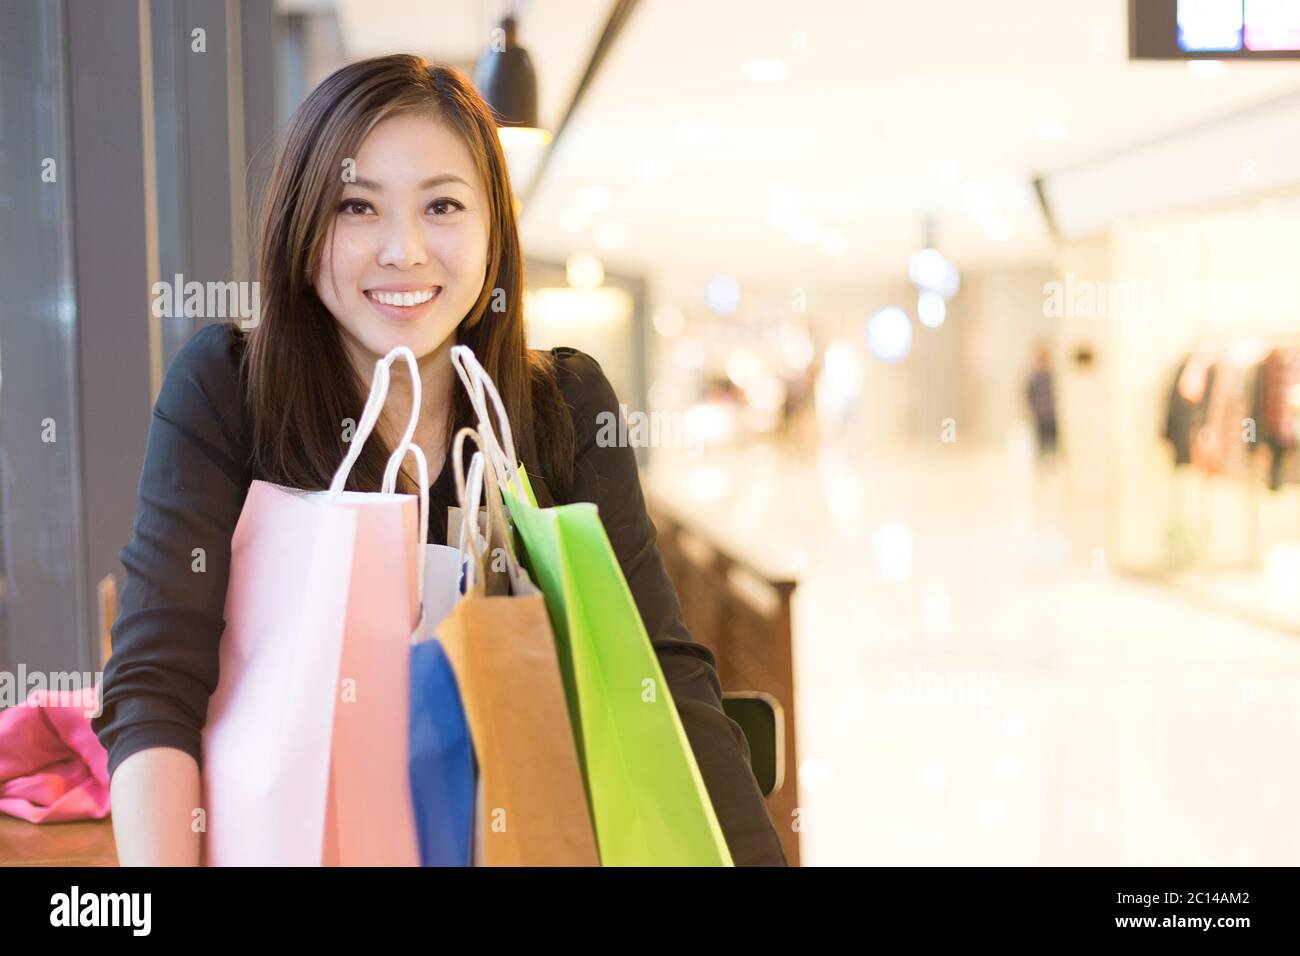 Junge asiatische Frau, die in einem modernen Einkaufszentrum einkaufen Stockfoto